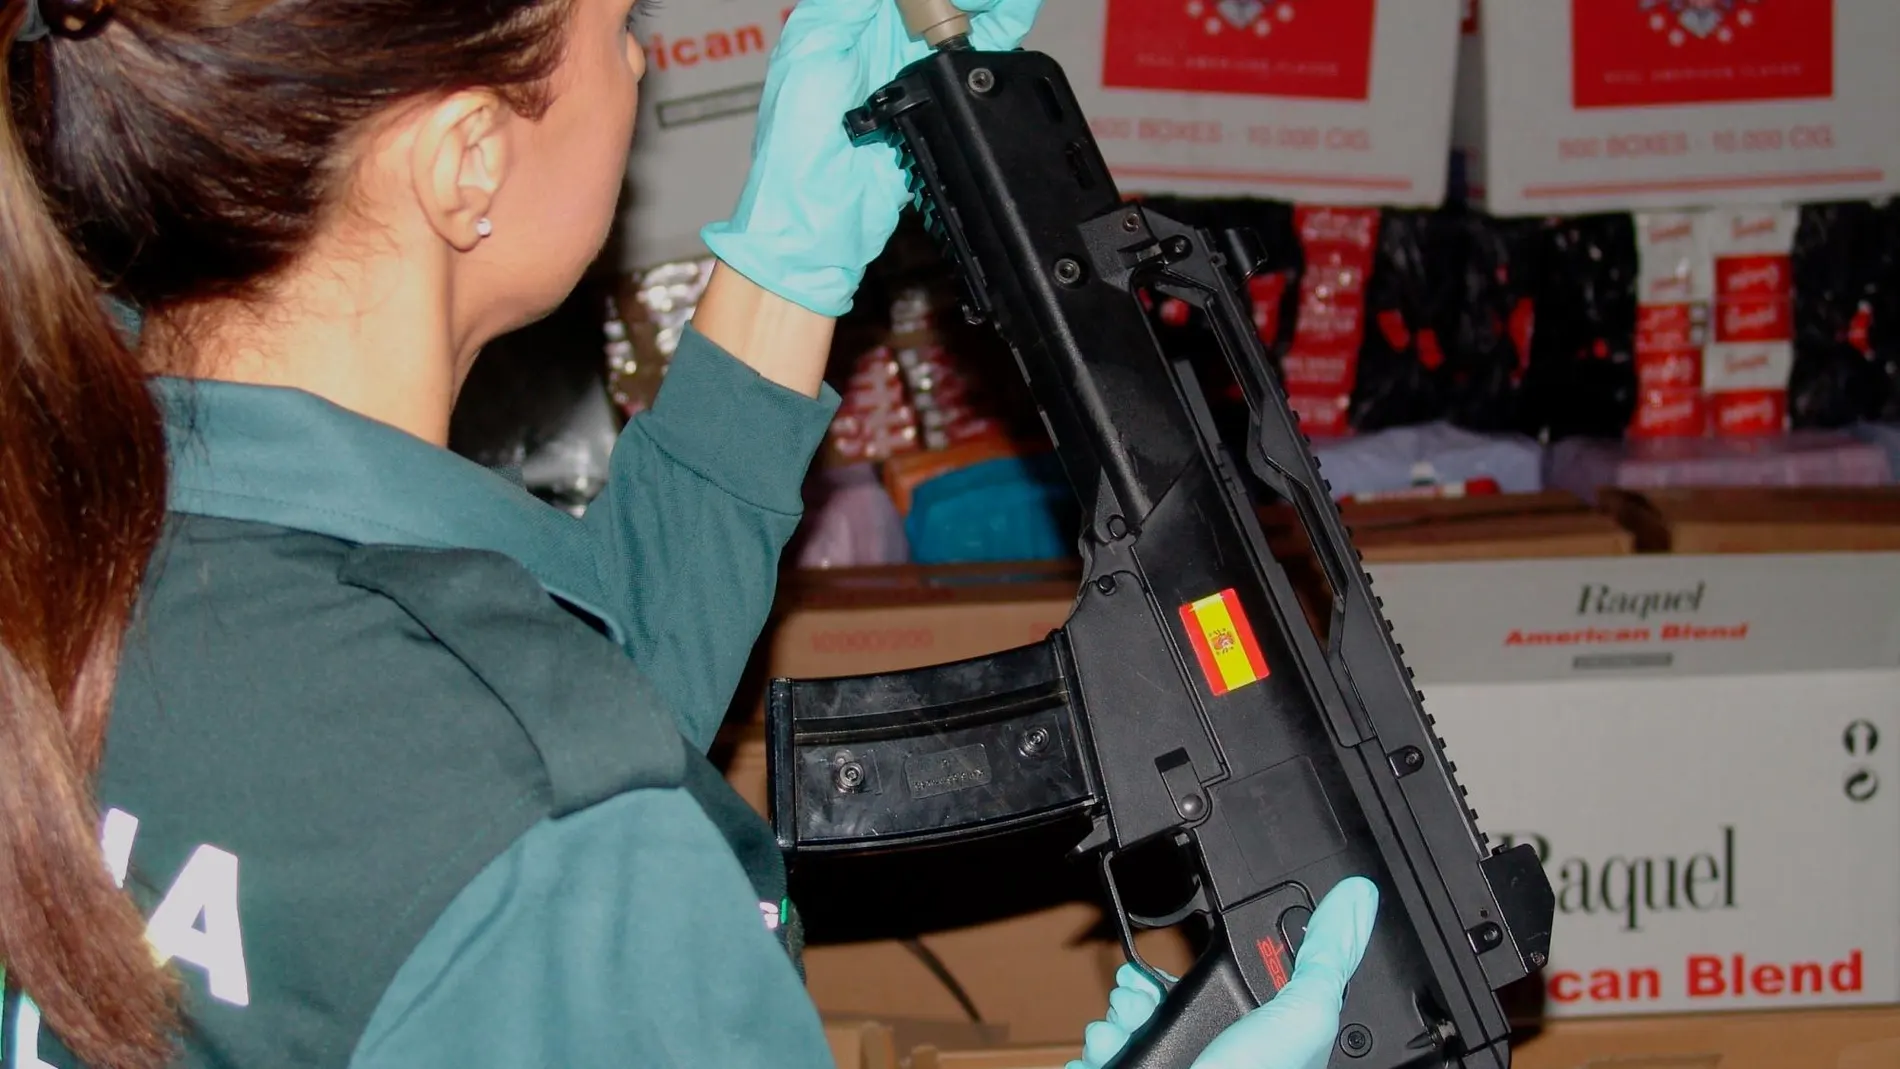 Estas actuaciones se enmarcan dentro de la normativa vigente en España para el comercio ilícito de armas / Foto: Europa Press